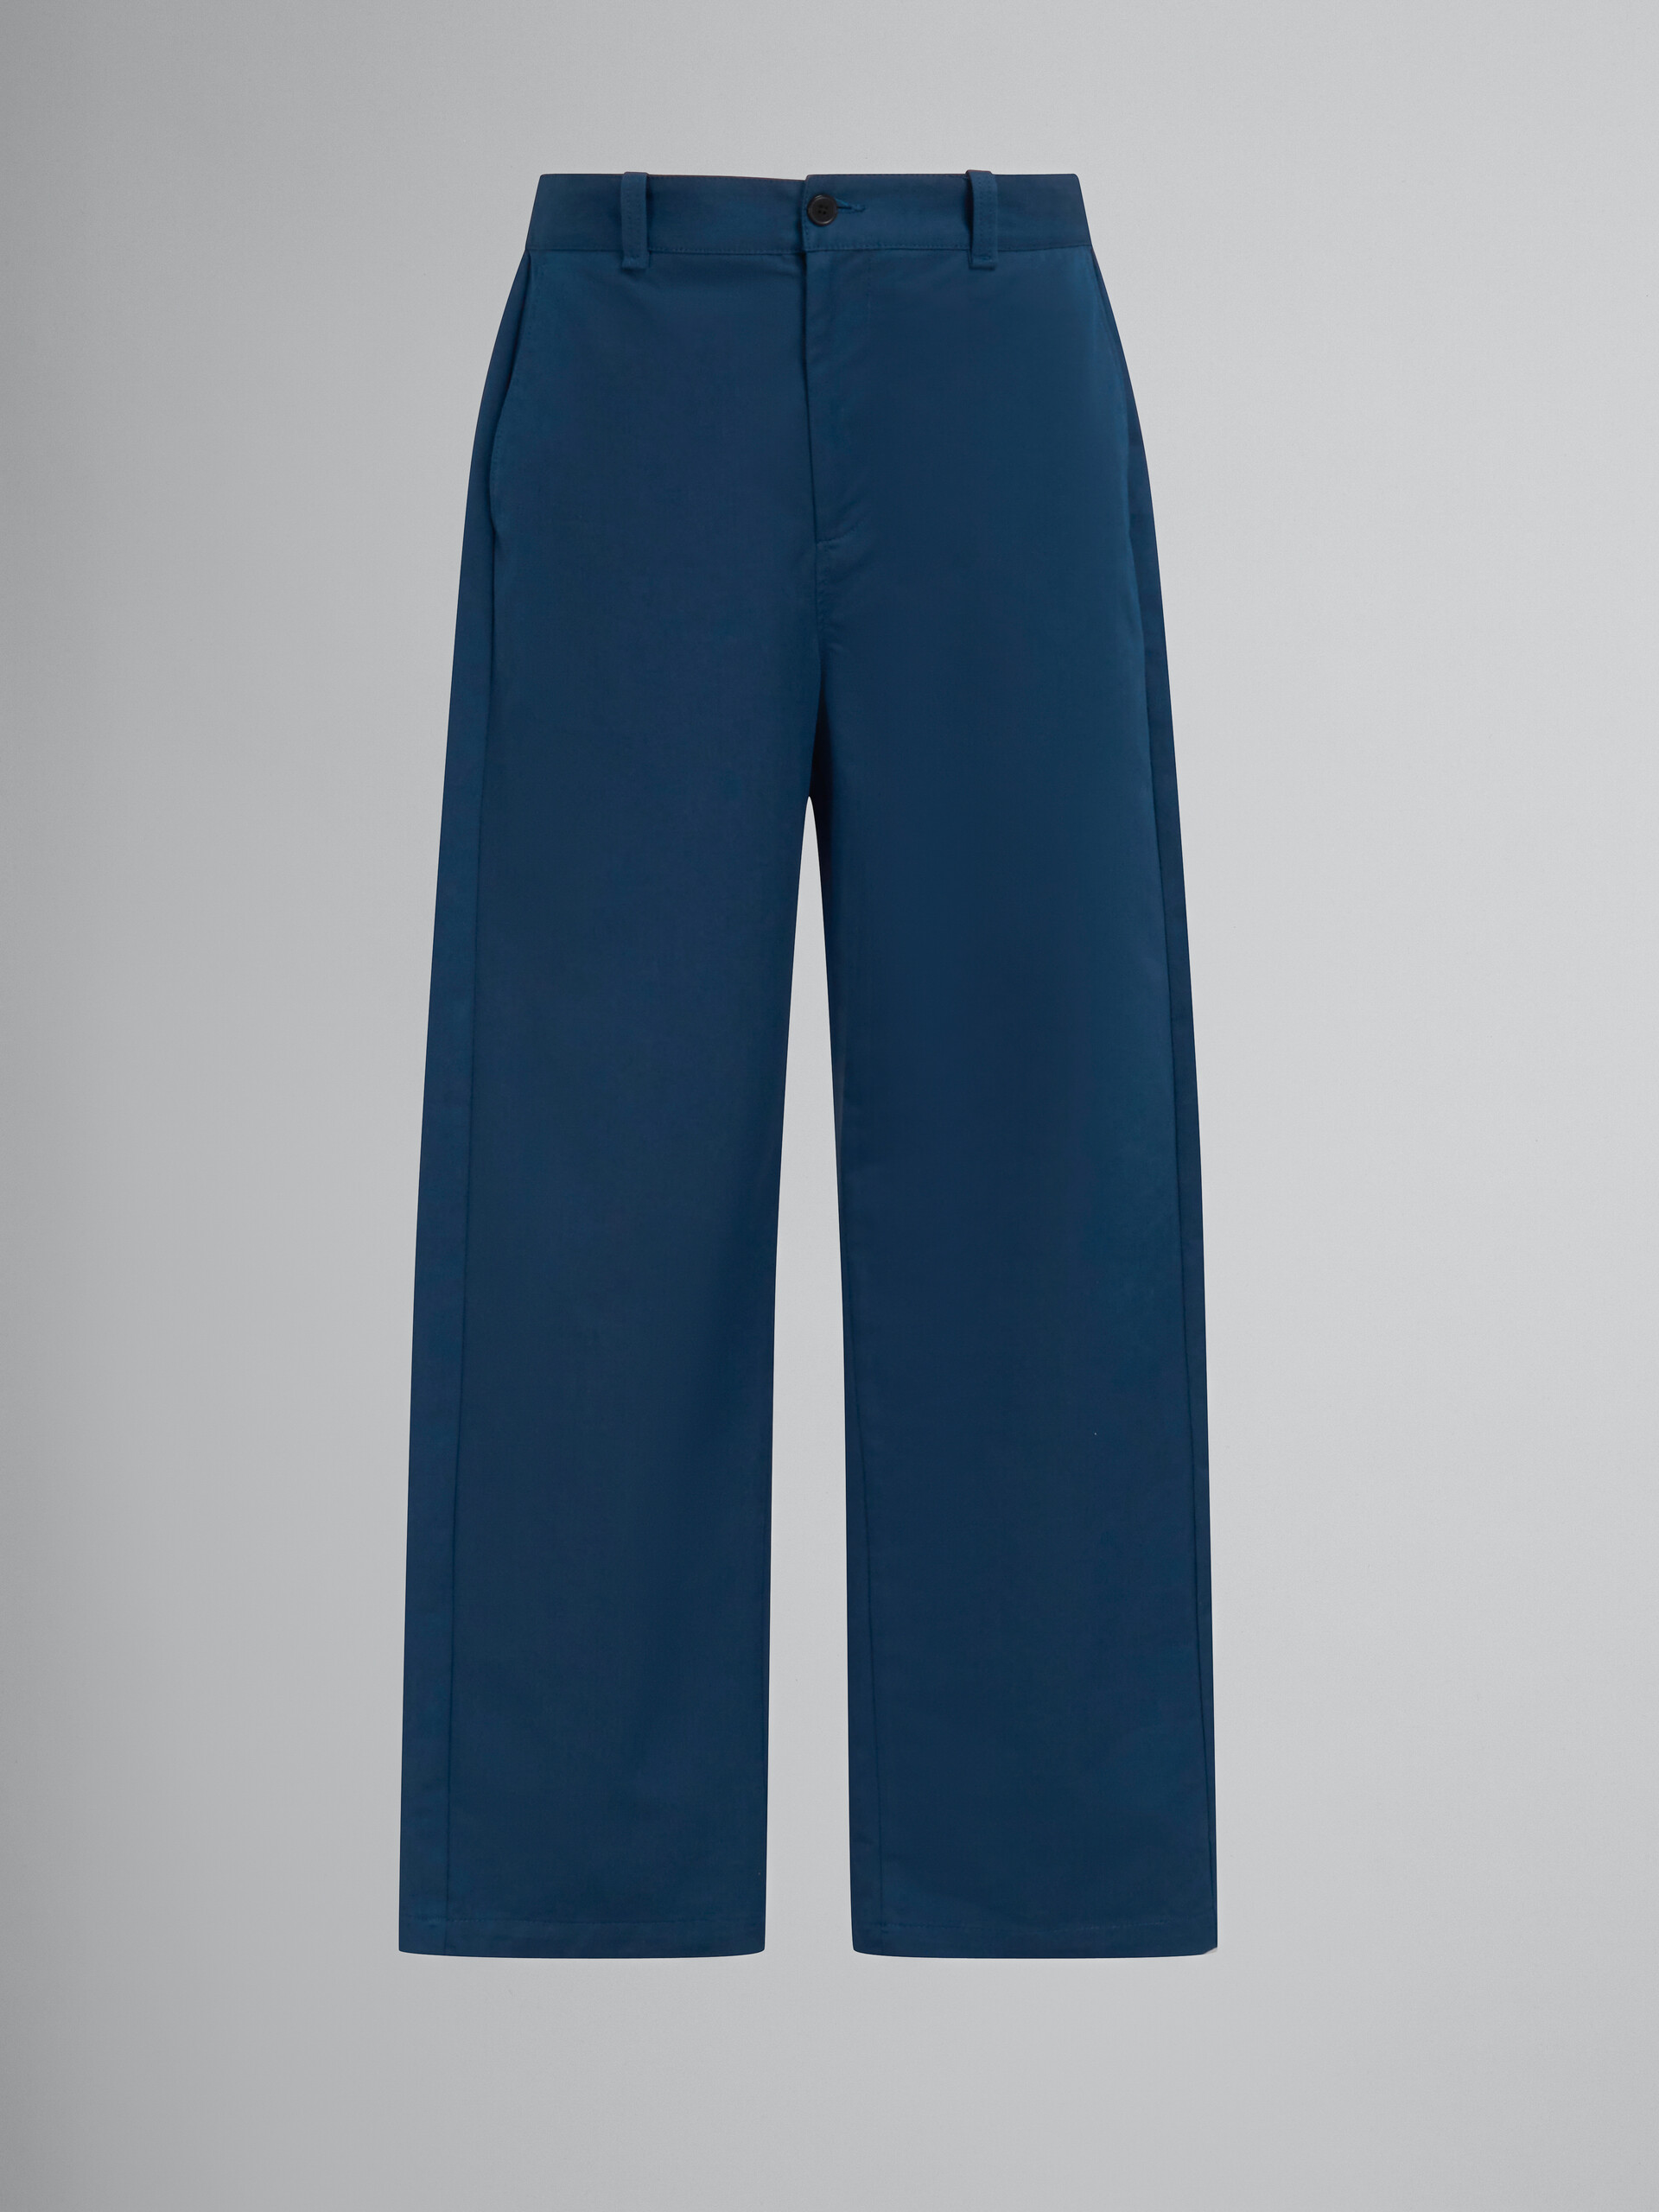 Pantaloni in cotone biologico blu con logo in vita sul retro - Pantaloni - Image 1